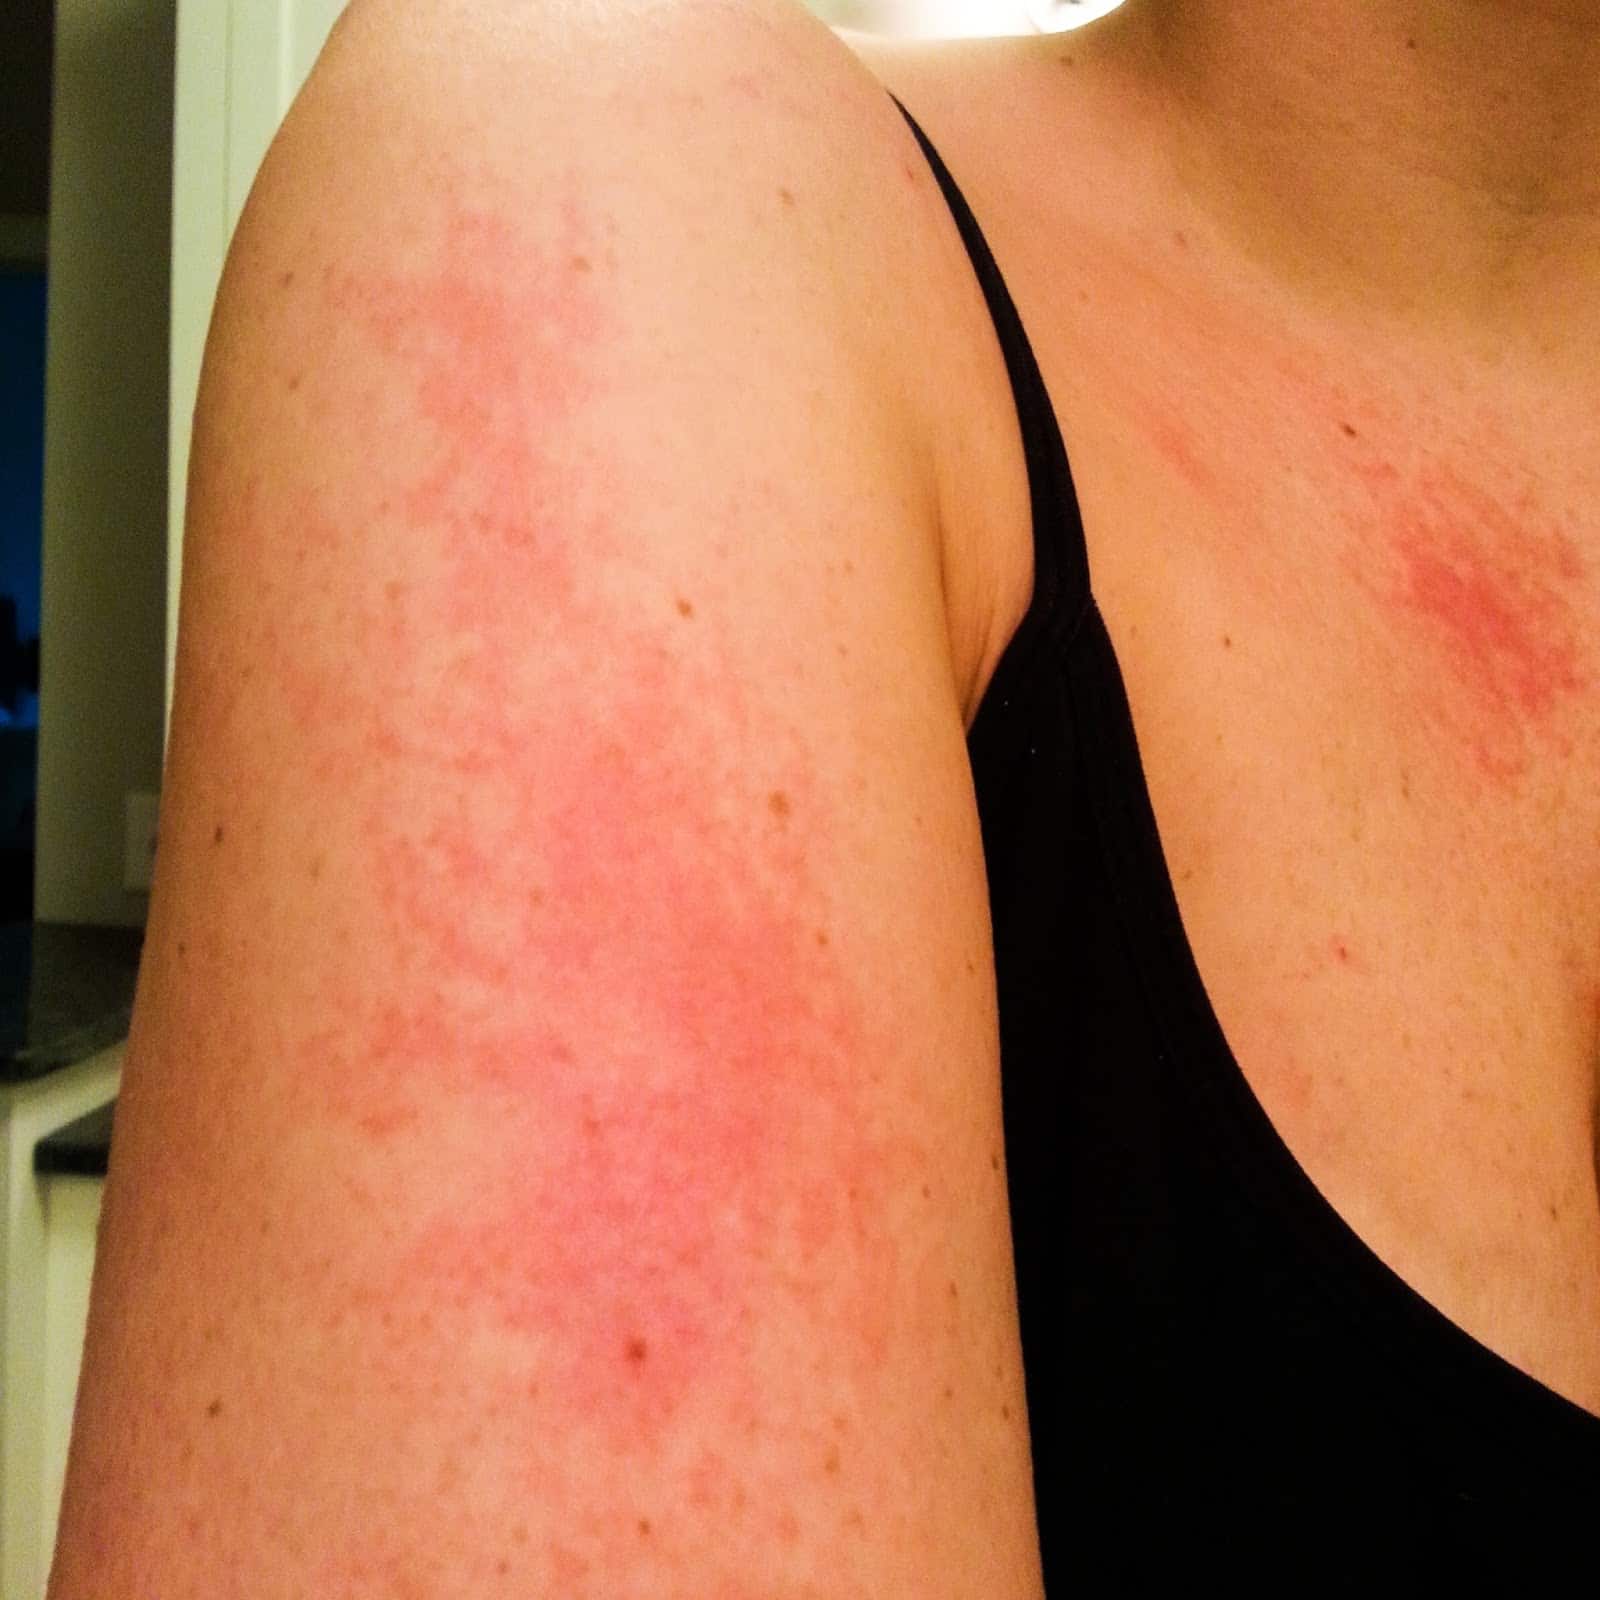 mideadesignz: Treatment For Rash On Arms